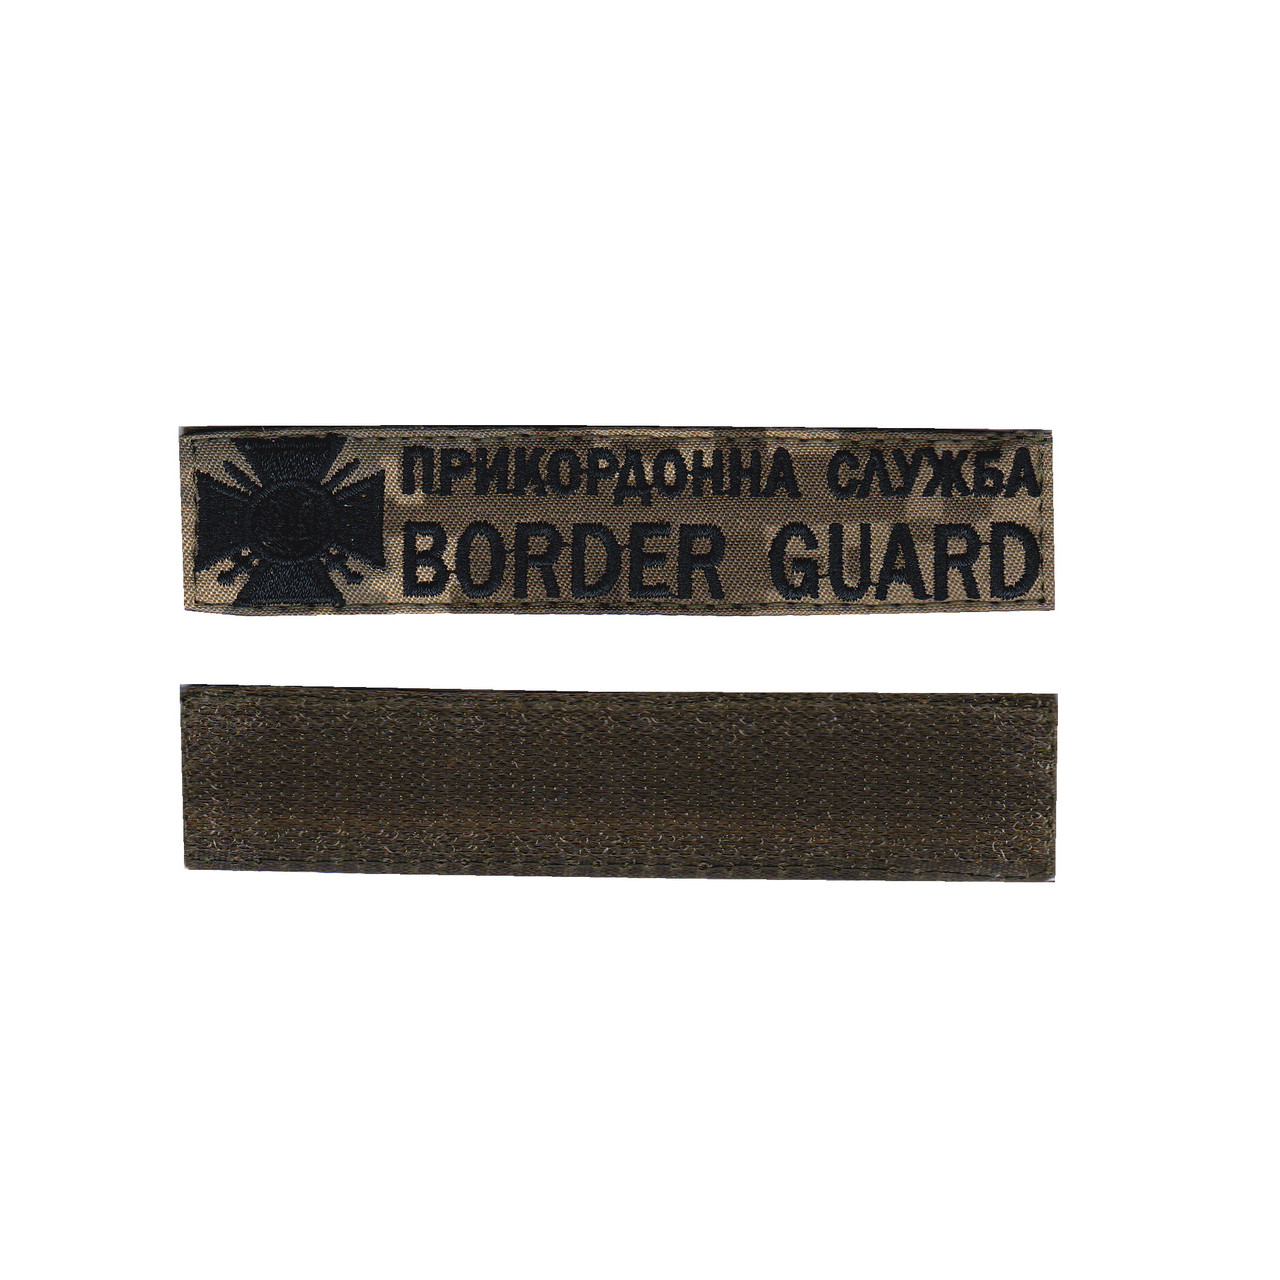 Прикордонна служба / BORDER GUARD, військовий / армійський шеврон ЗСУ, чорний колір на пікселі. 2,8 см * 12,5 см